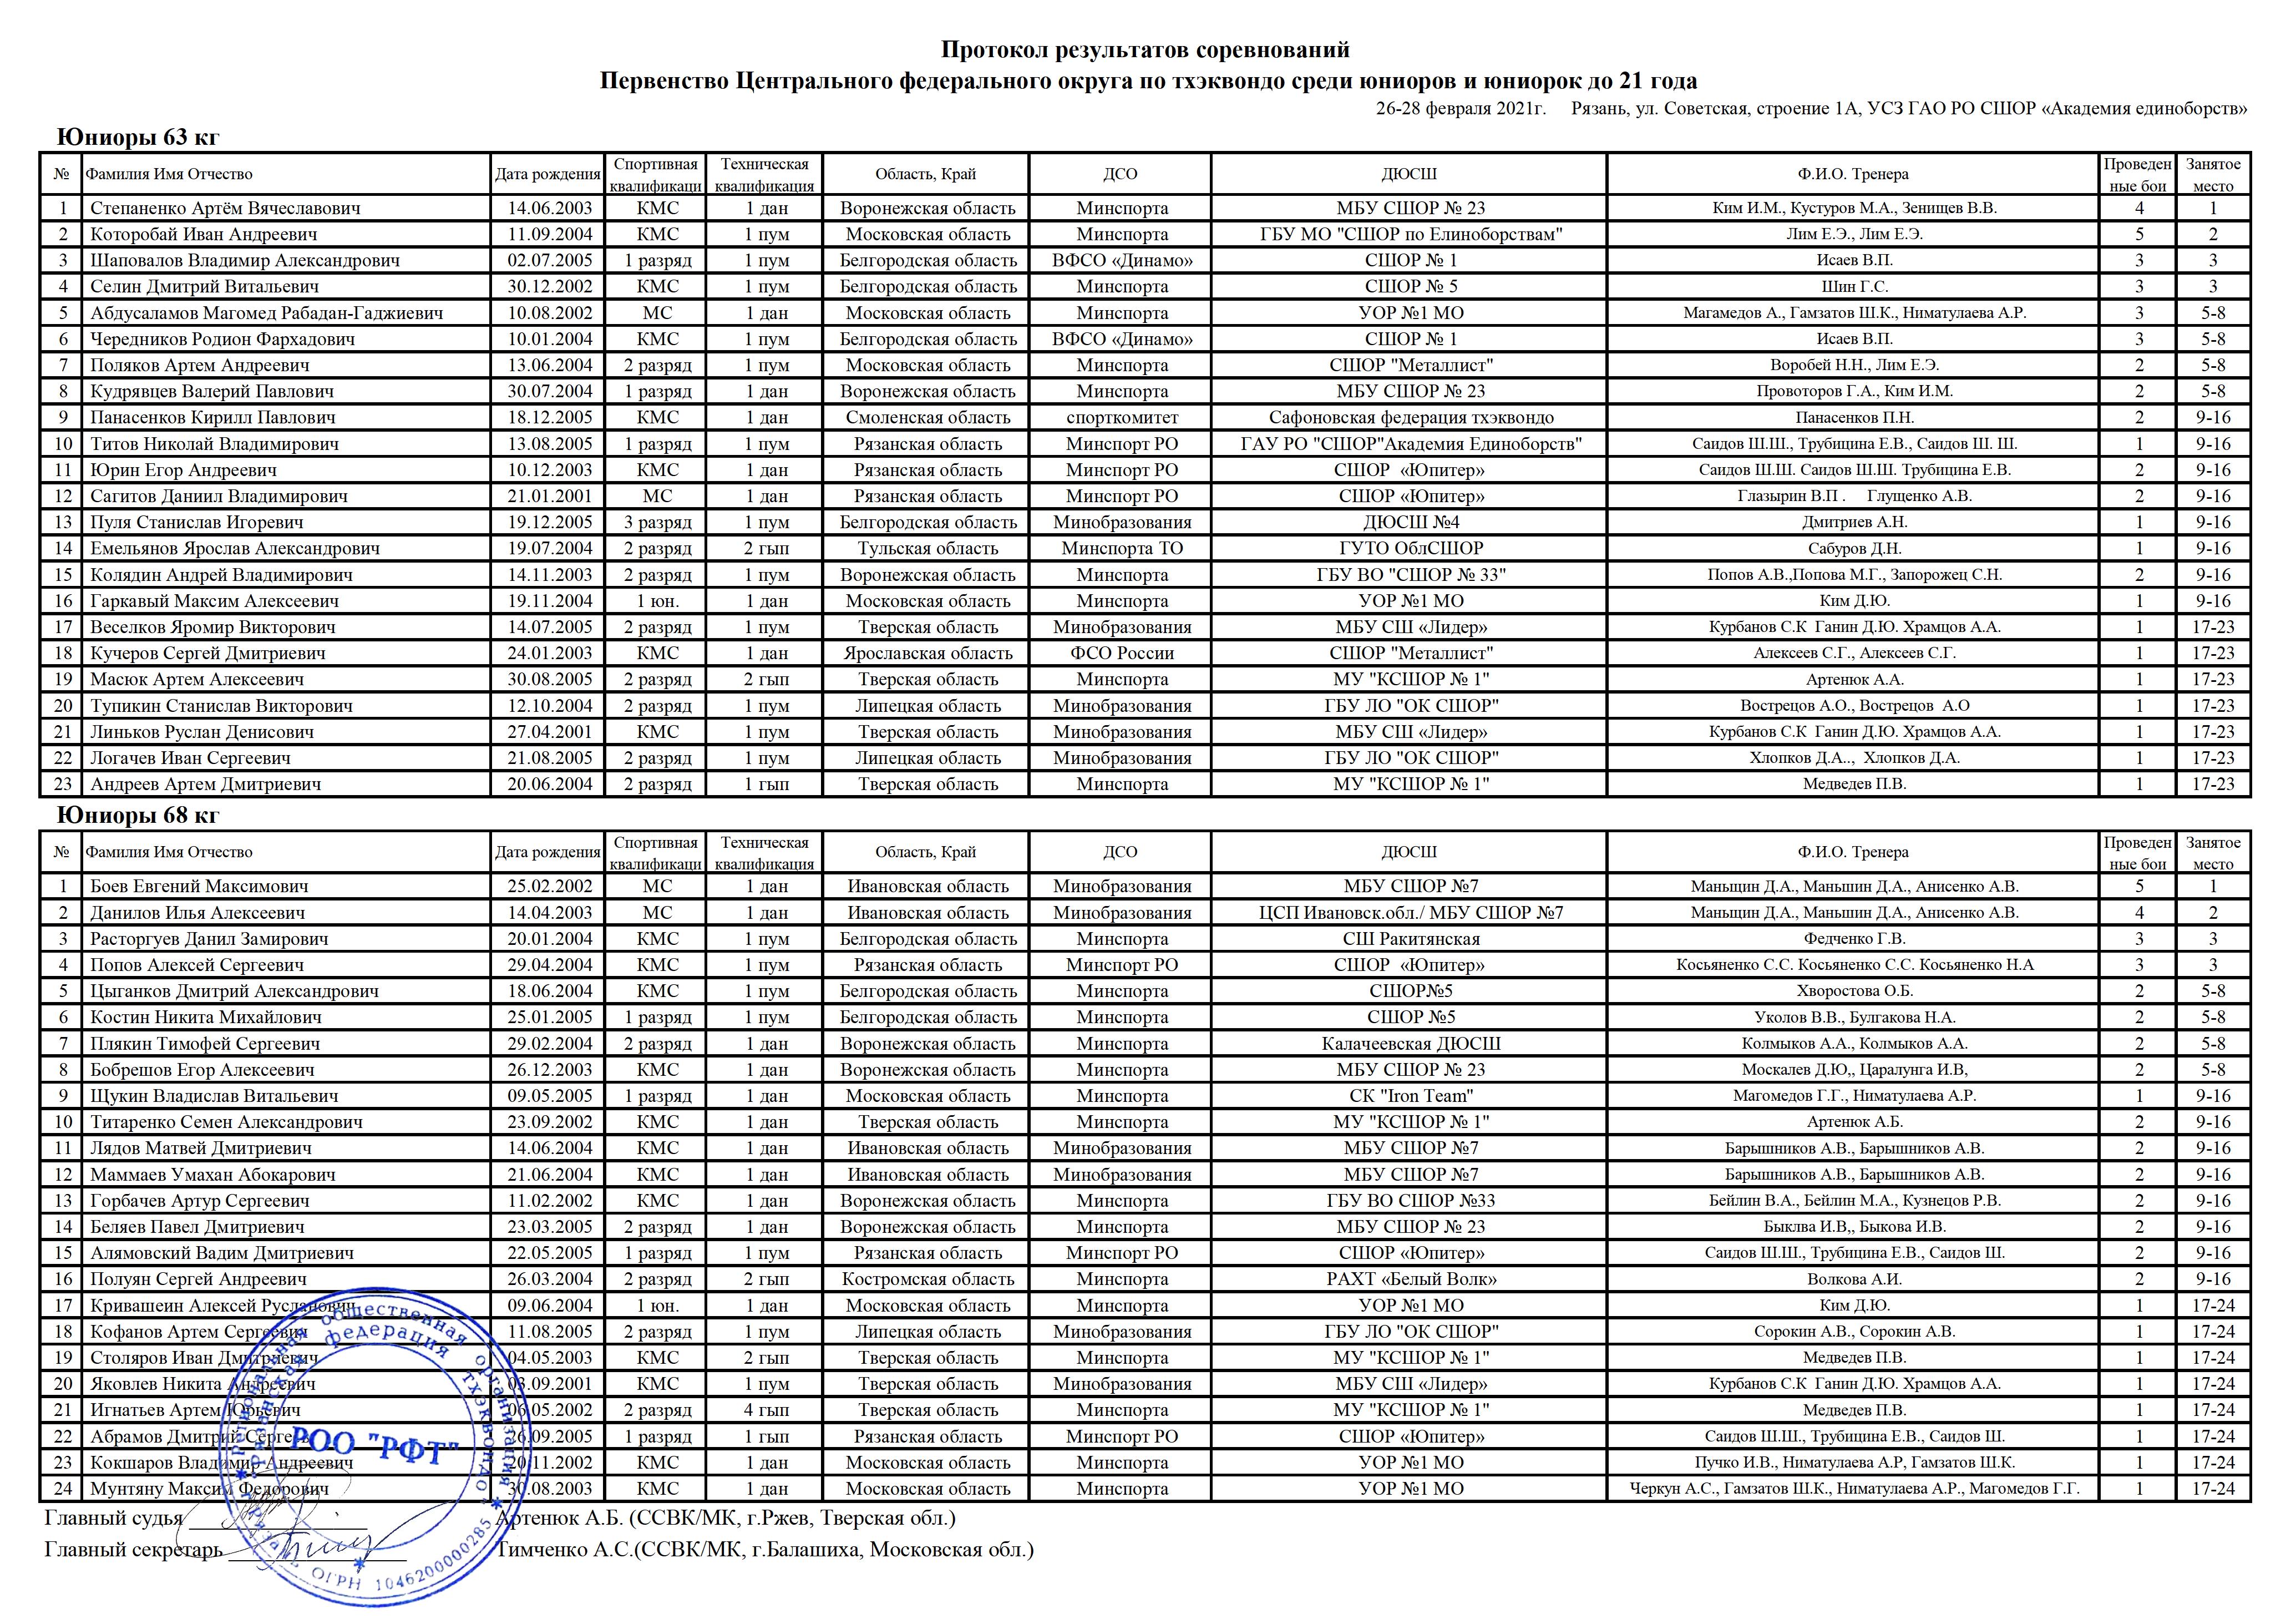 Протоколы результатов соревнований Первенства Центрального Федерального округа по тхэквондо (WT) среди юниоров и юниорок до 21 года, проходившее в Рязани с 26 по 28 февраля 2021 года. 